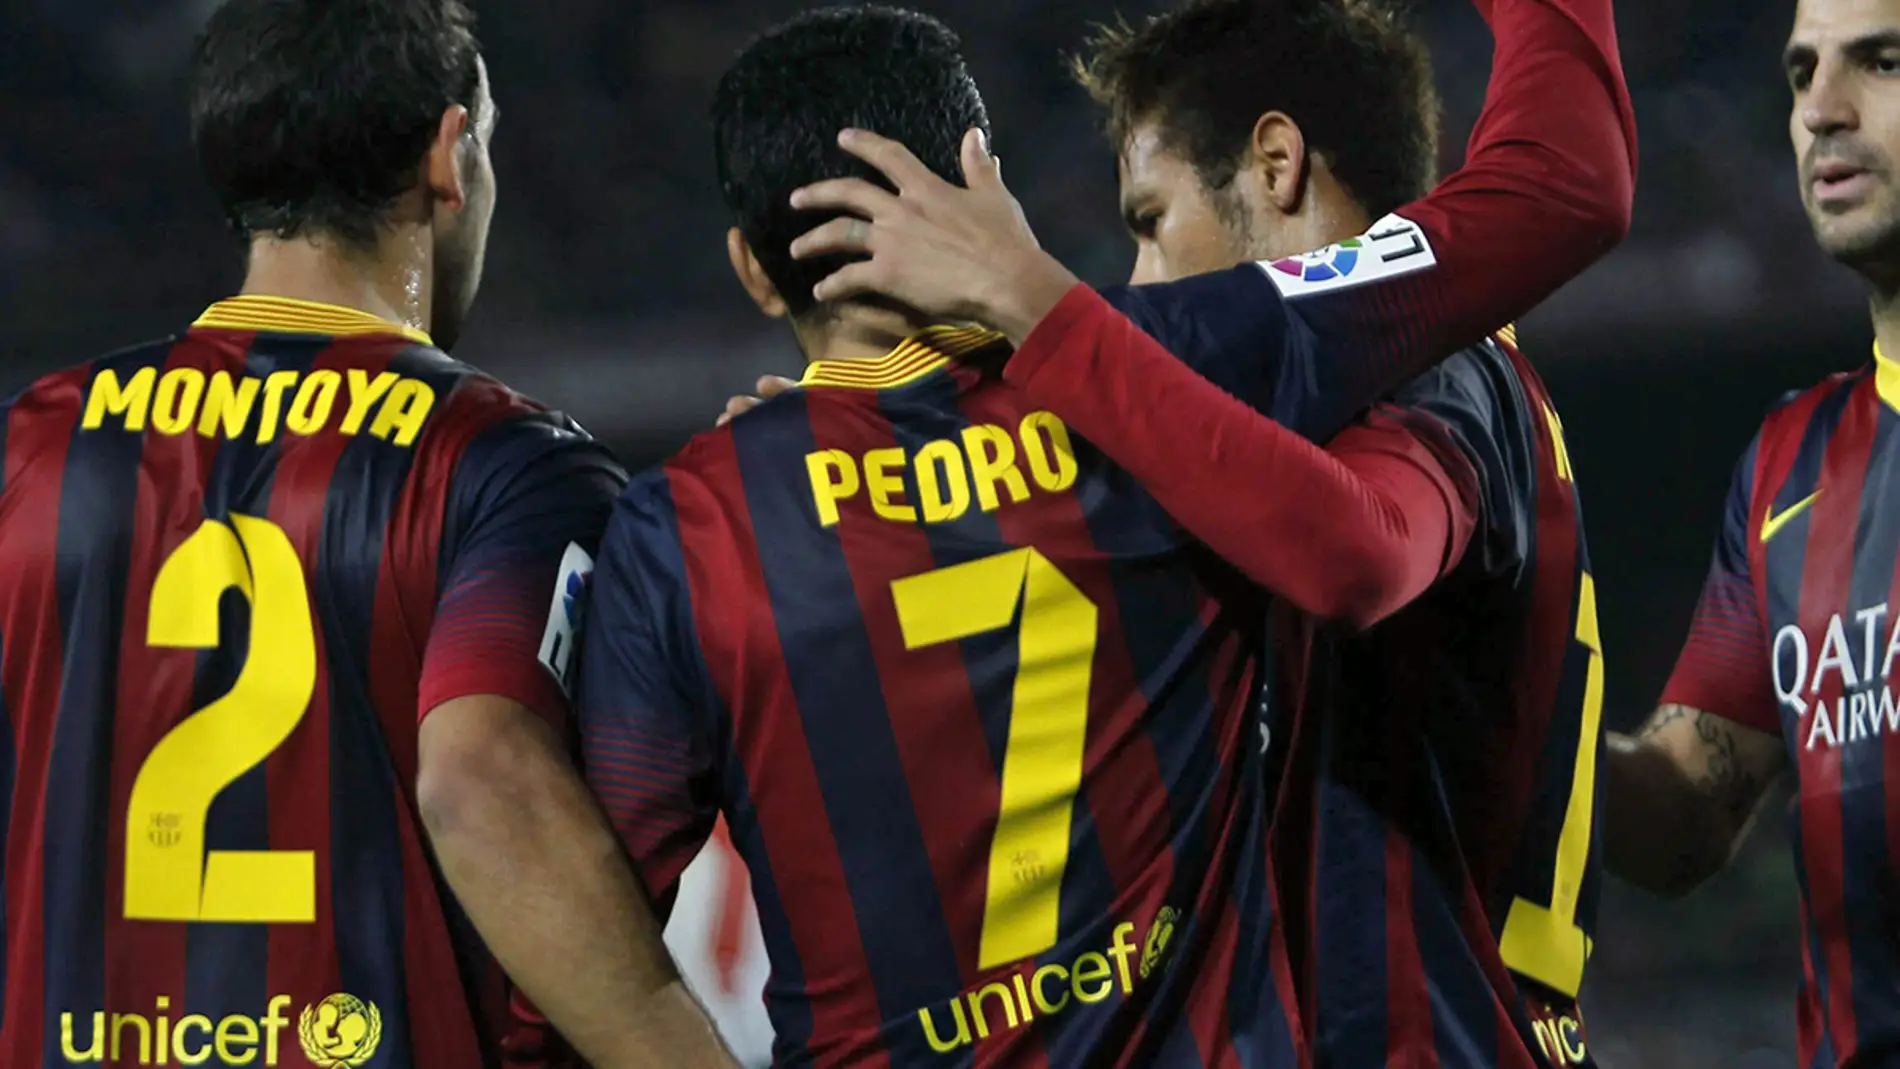 Los jugadores del FC Barcelona felicitan a pedro por su gol